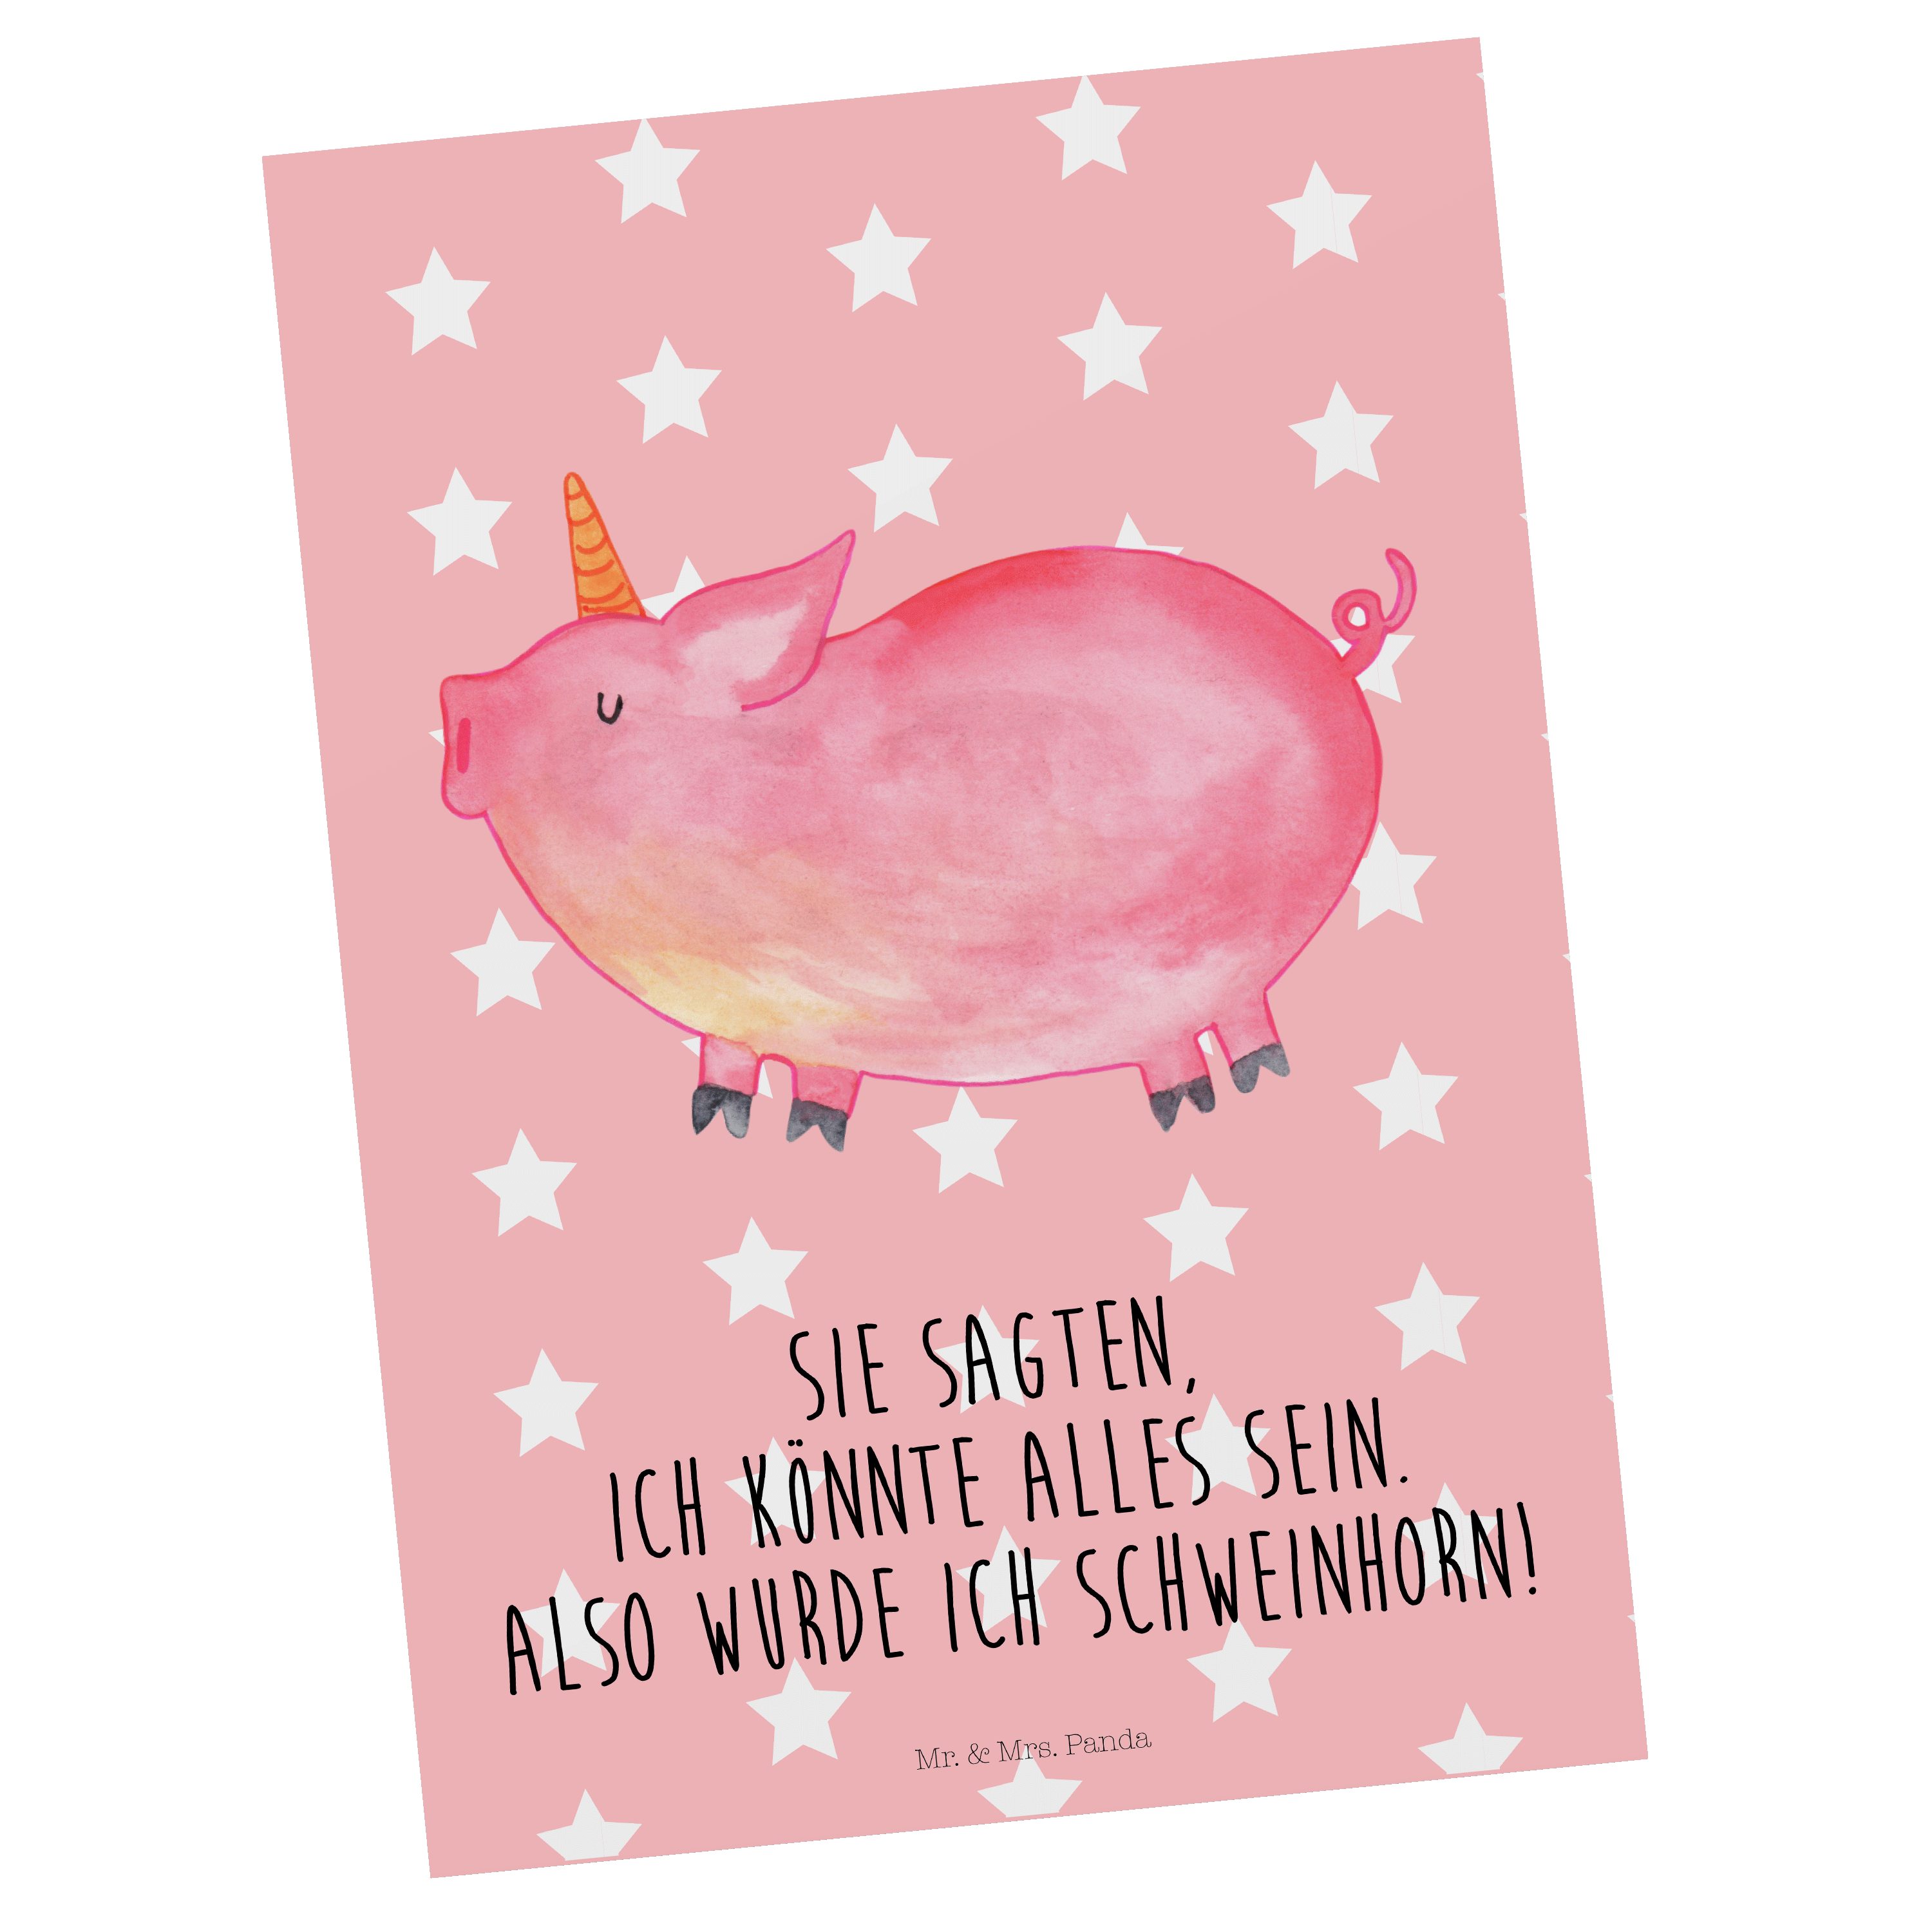 Mr. & Mrs. Panda Postkarte Einhorn Schweinhorn - Rot Pastell - Geschenk, Geburtstagskarte, Grußk